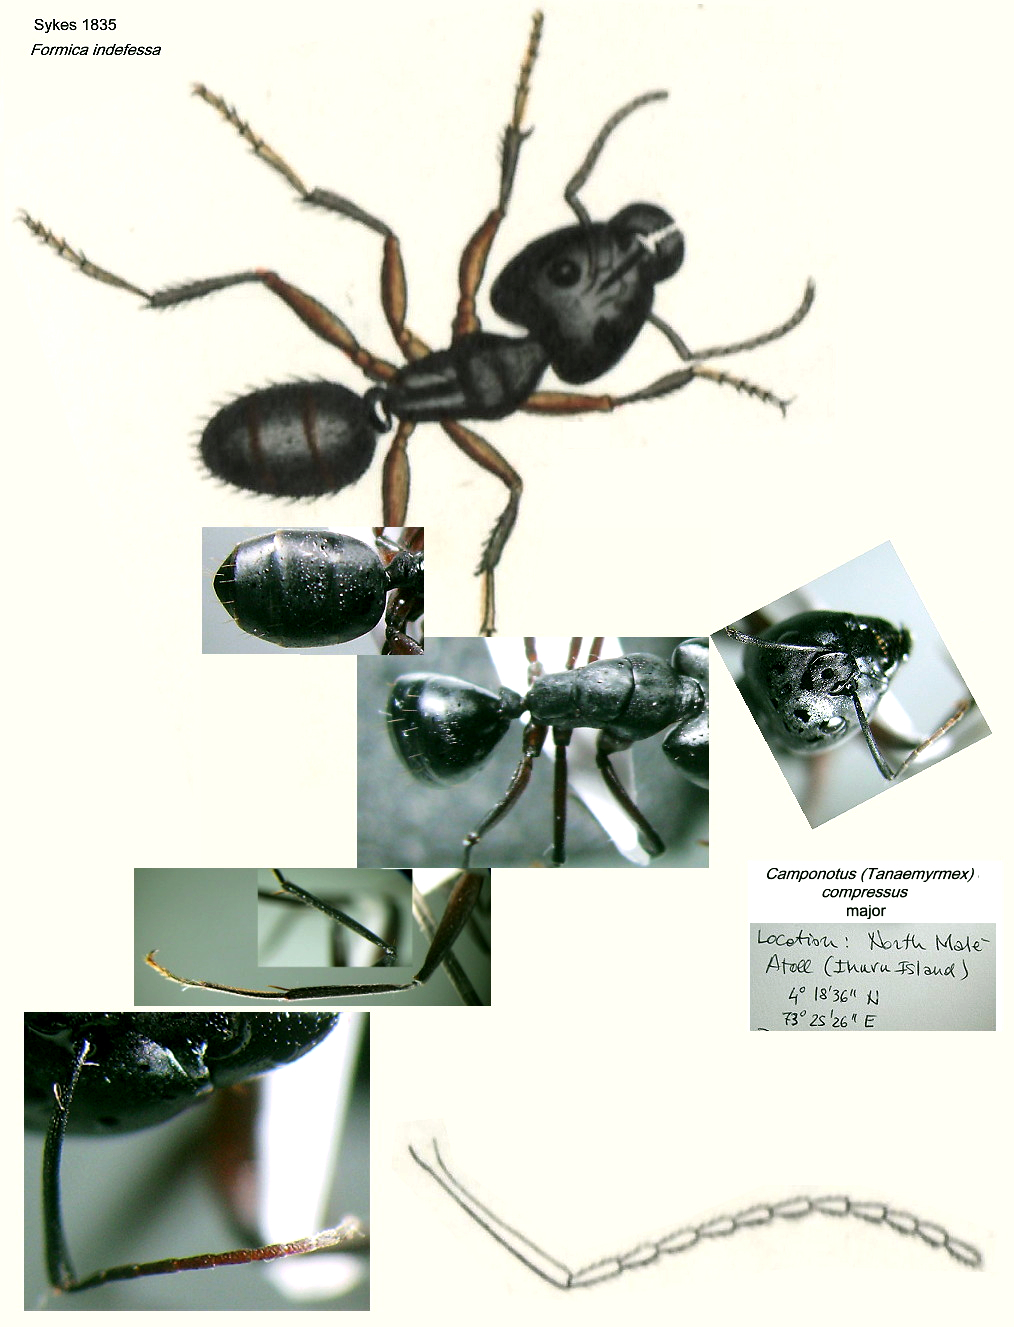 {Camponotus compressus Maldives}